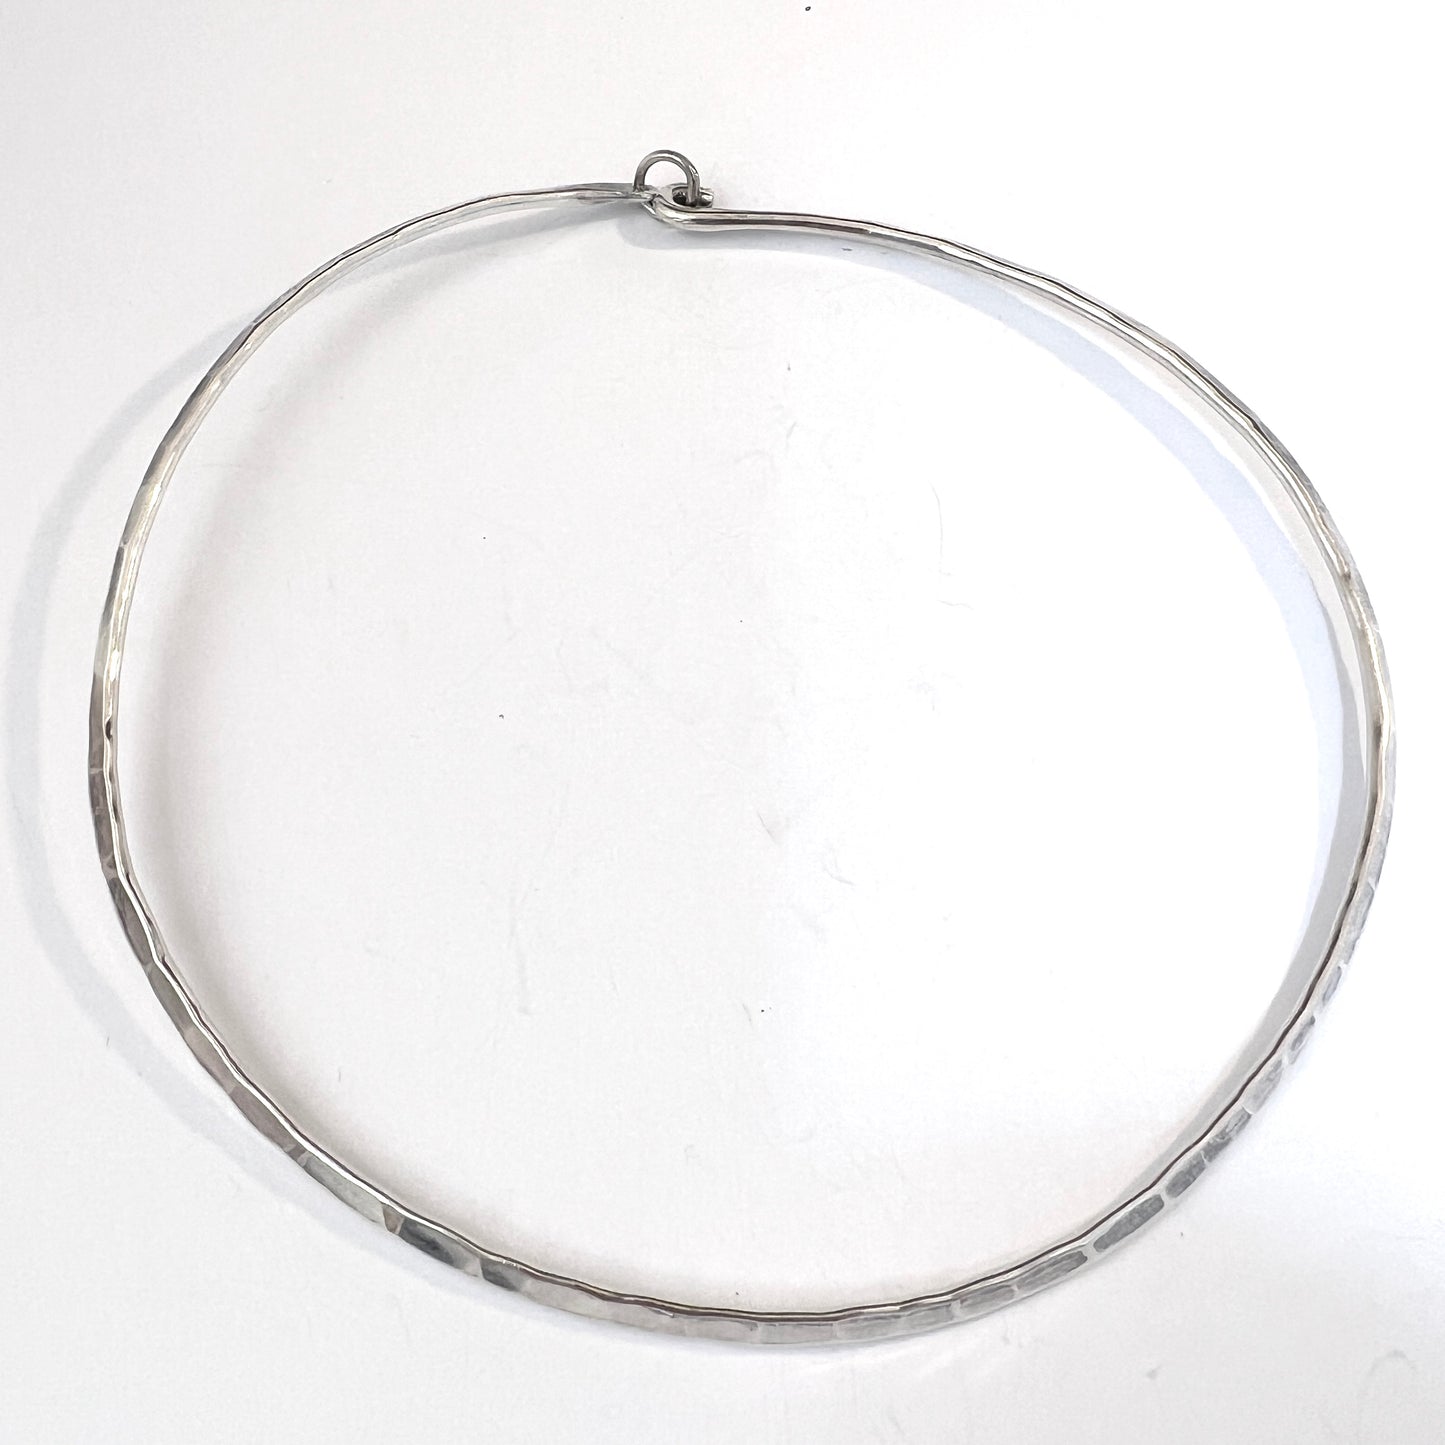 Kuhlin, Sweden 1991. Vintage Hammered Sterling Silver Neck Ring Necklace. Signed.